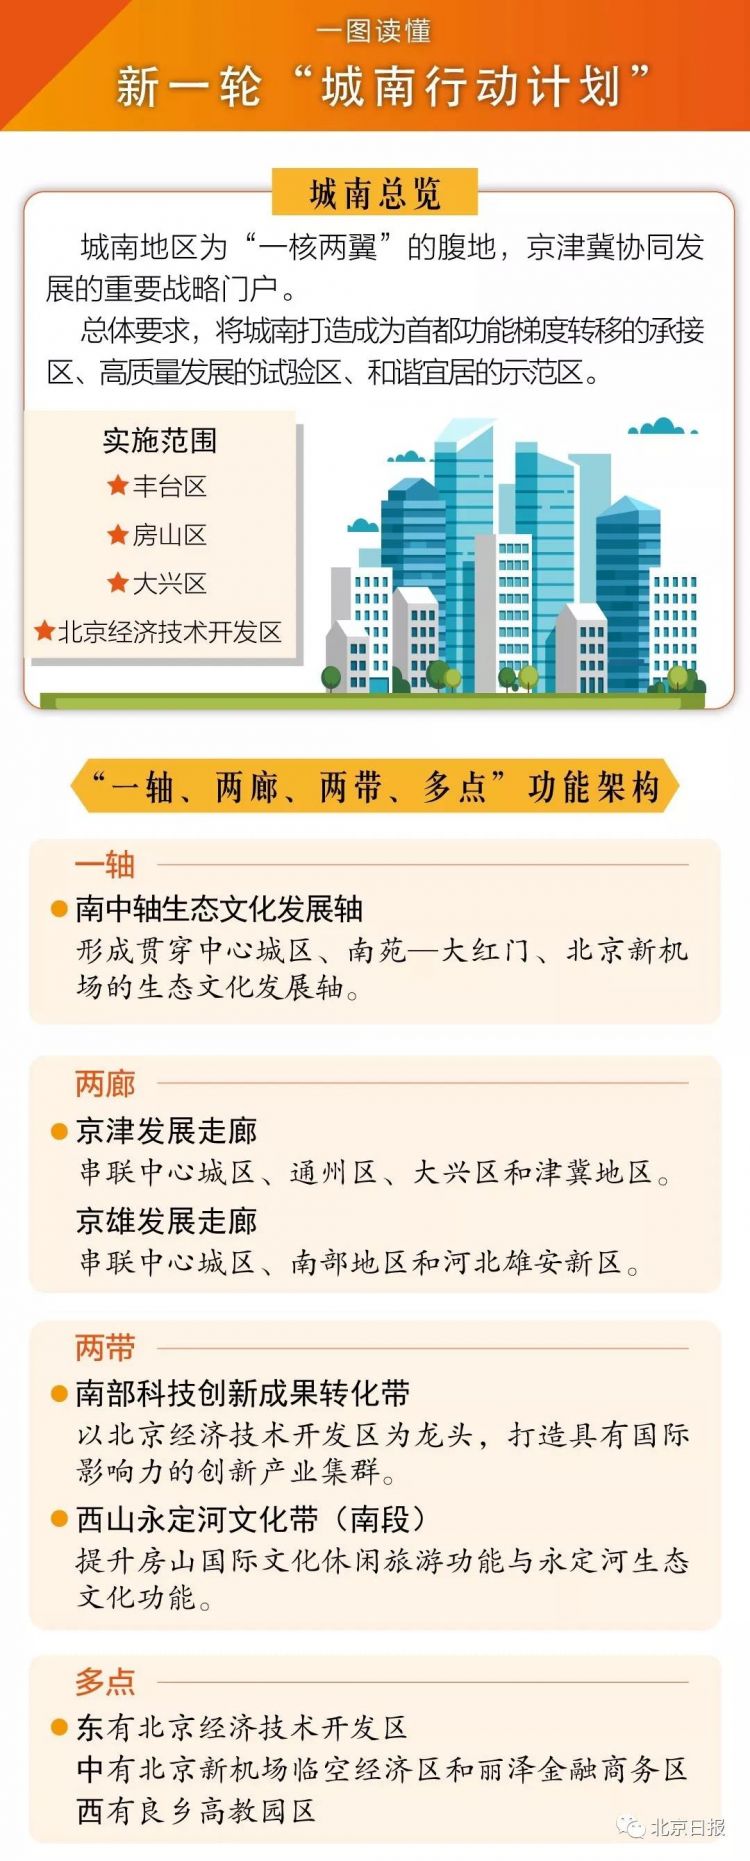 北京三轮城南行动计划公布 这些地方要腾飞